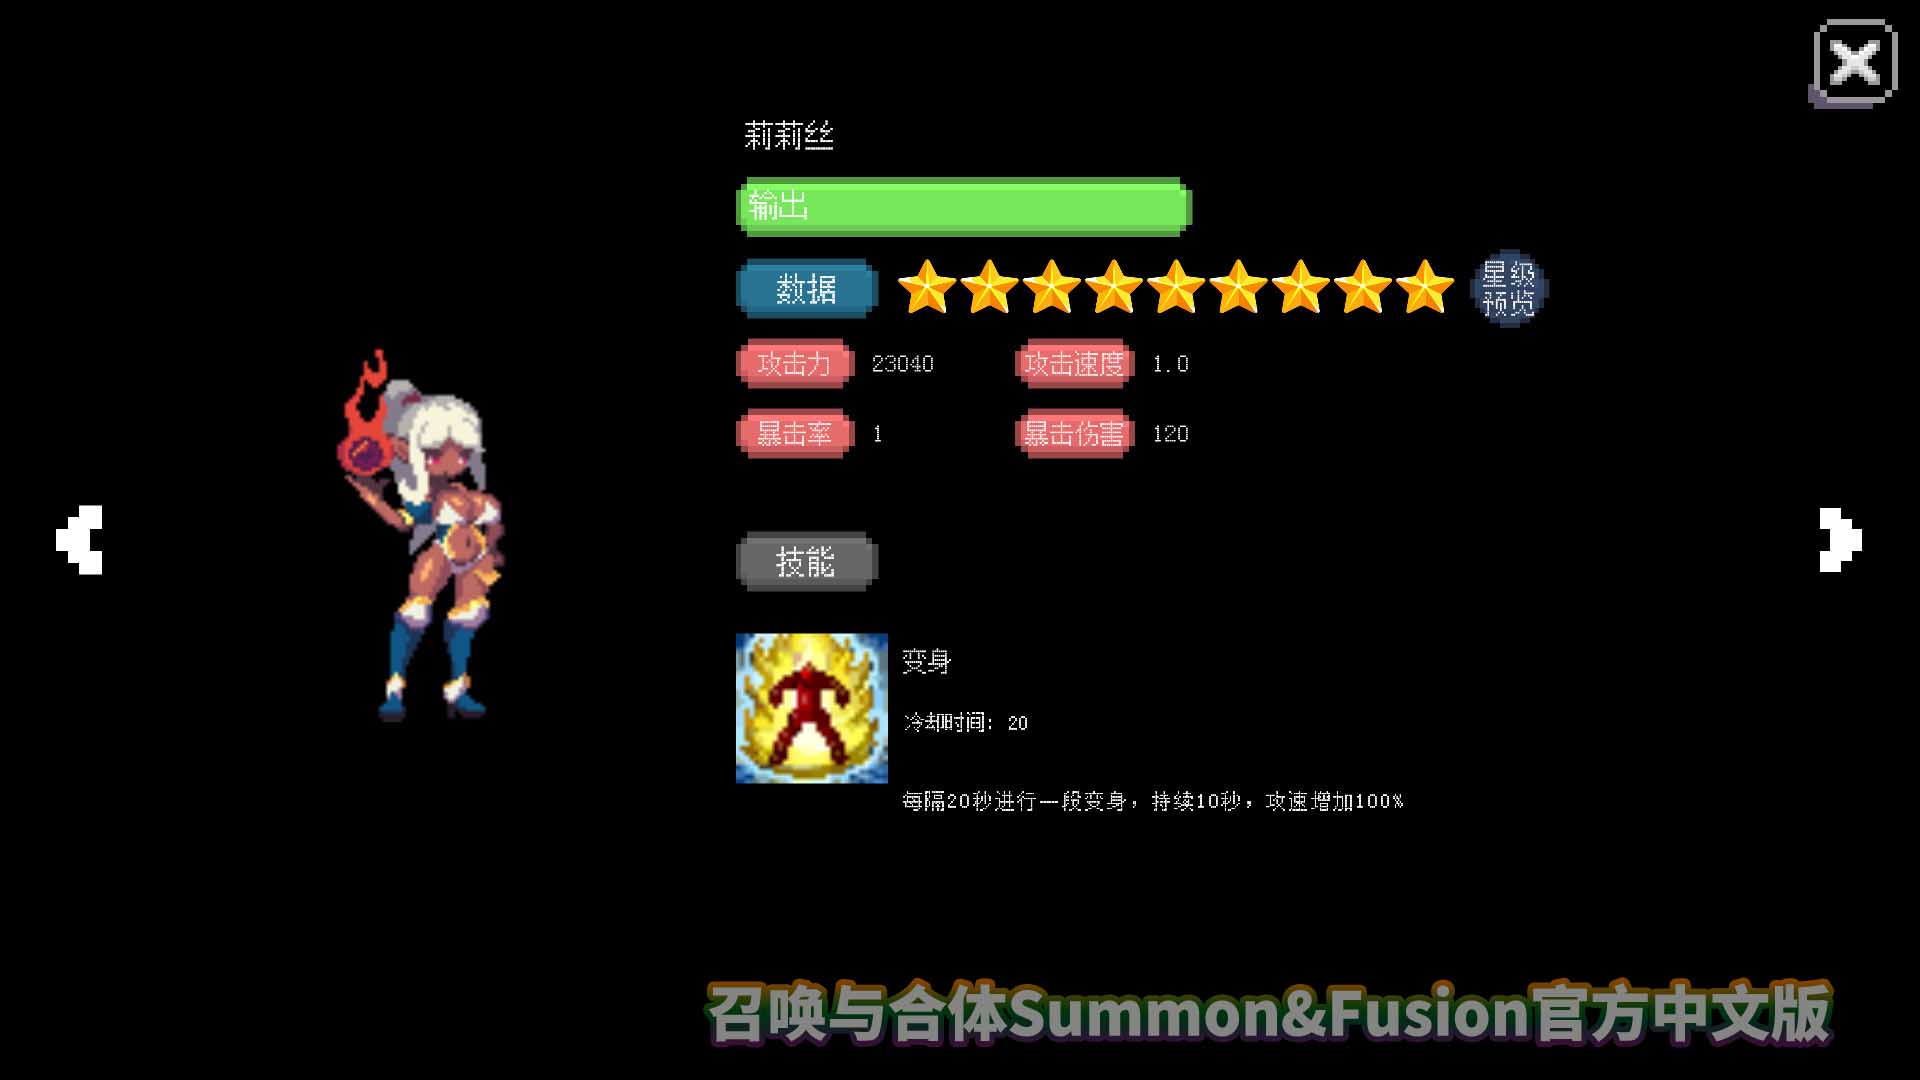 召唤与合体Summon&Fusion官方中文版网盘直链